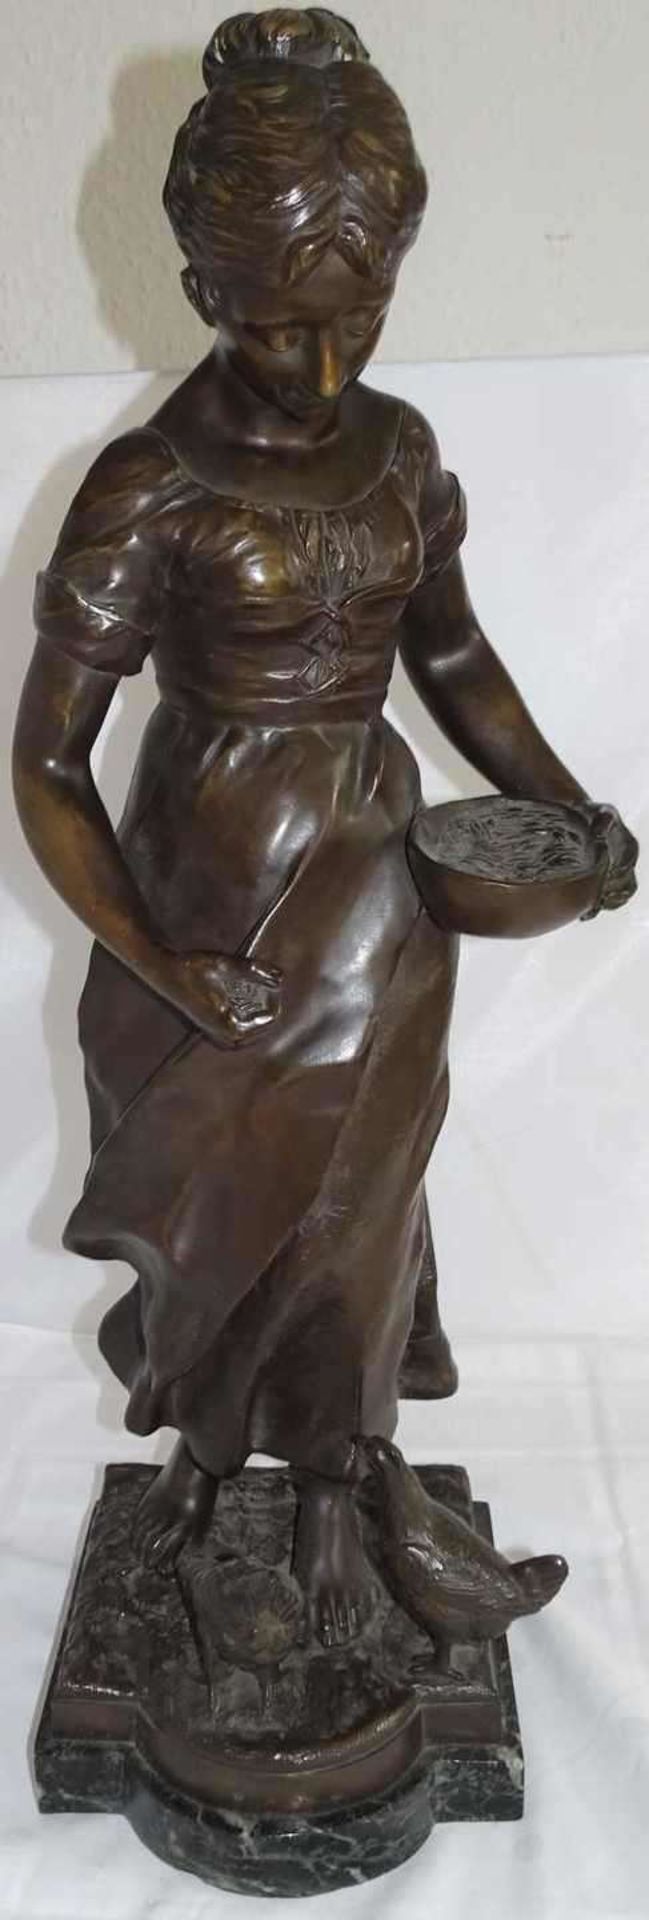 Caspar GRAHS (1869-1963), Bronzefigur "Magd beim Hühner füttern". Höhe ca. 57 cm. Am Sockel